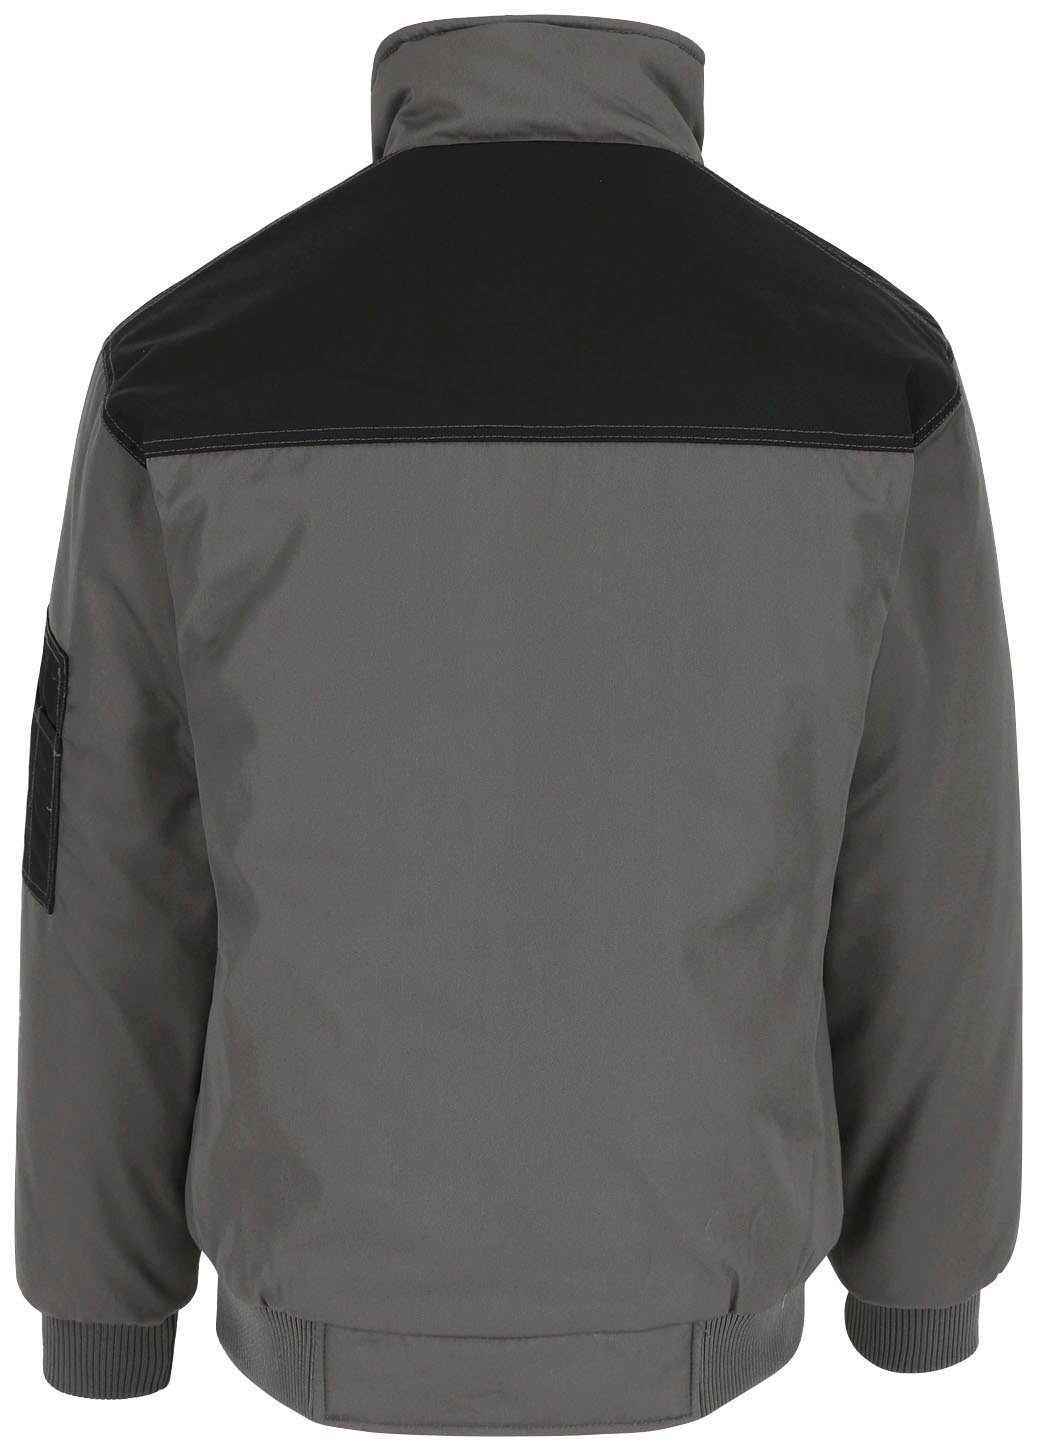 Herock Arbeitsjacke Typhon Jacke Wasserabweisend viele robust, Fleece-Kragen, grau Taschen, mit viele Farben